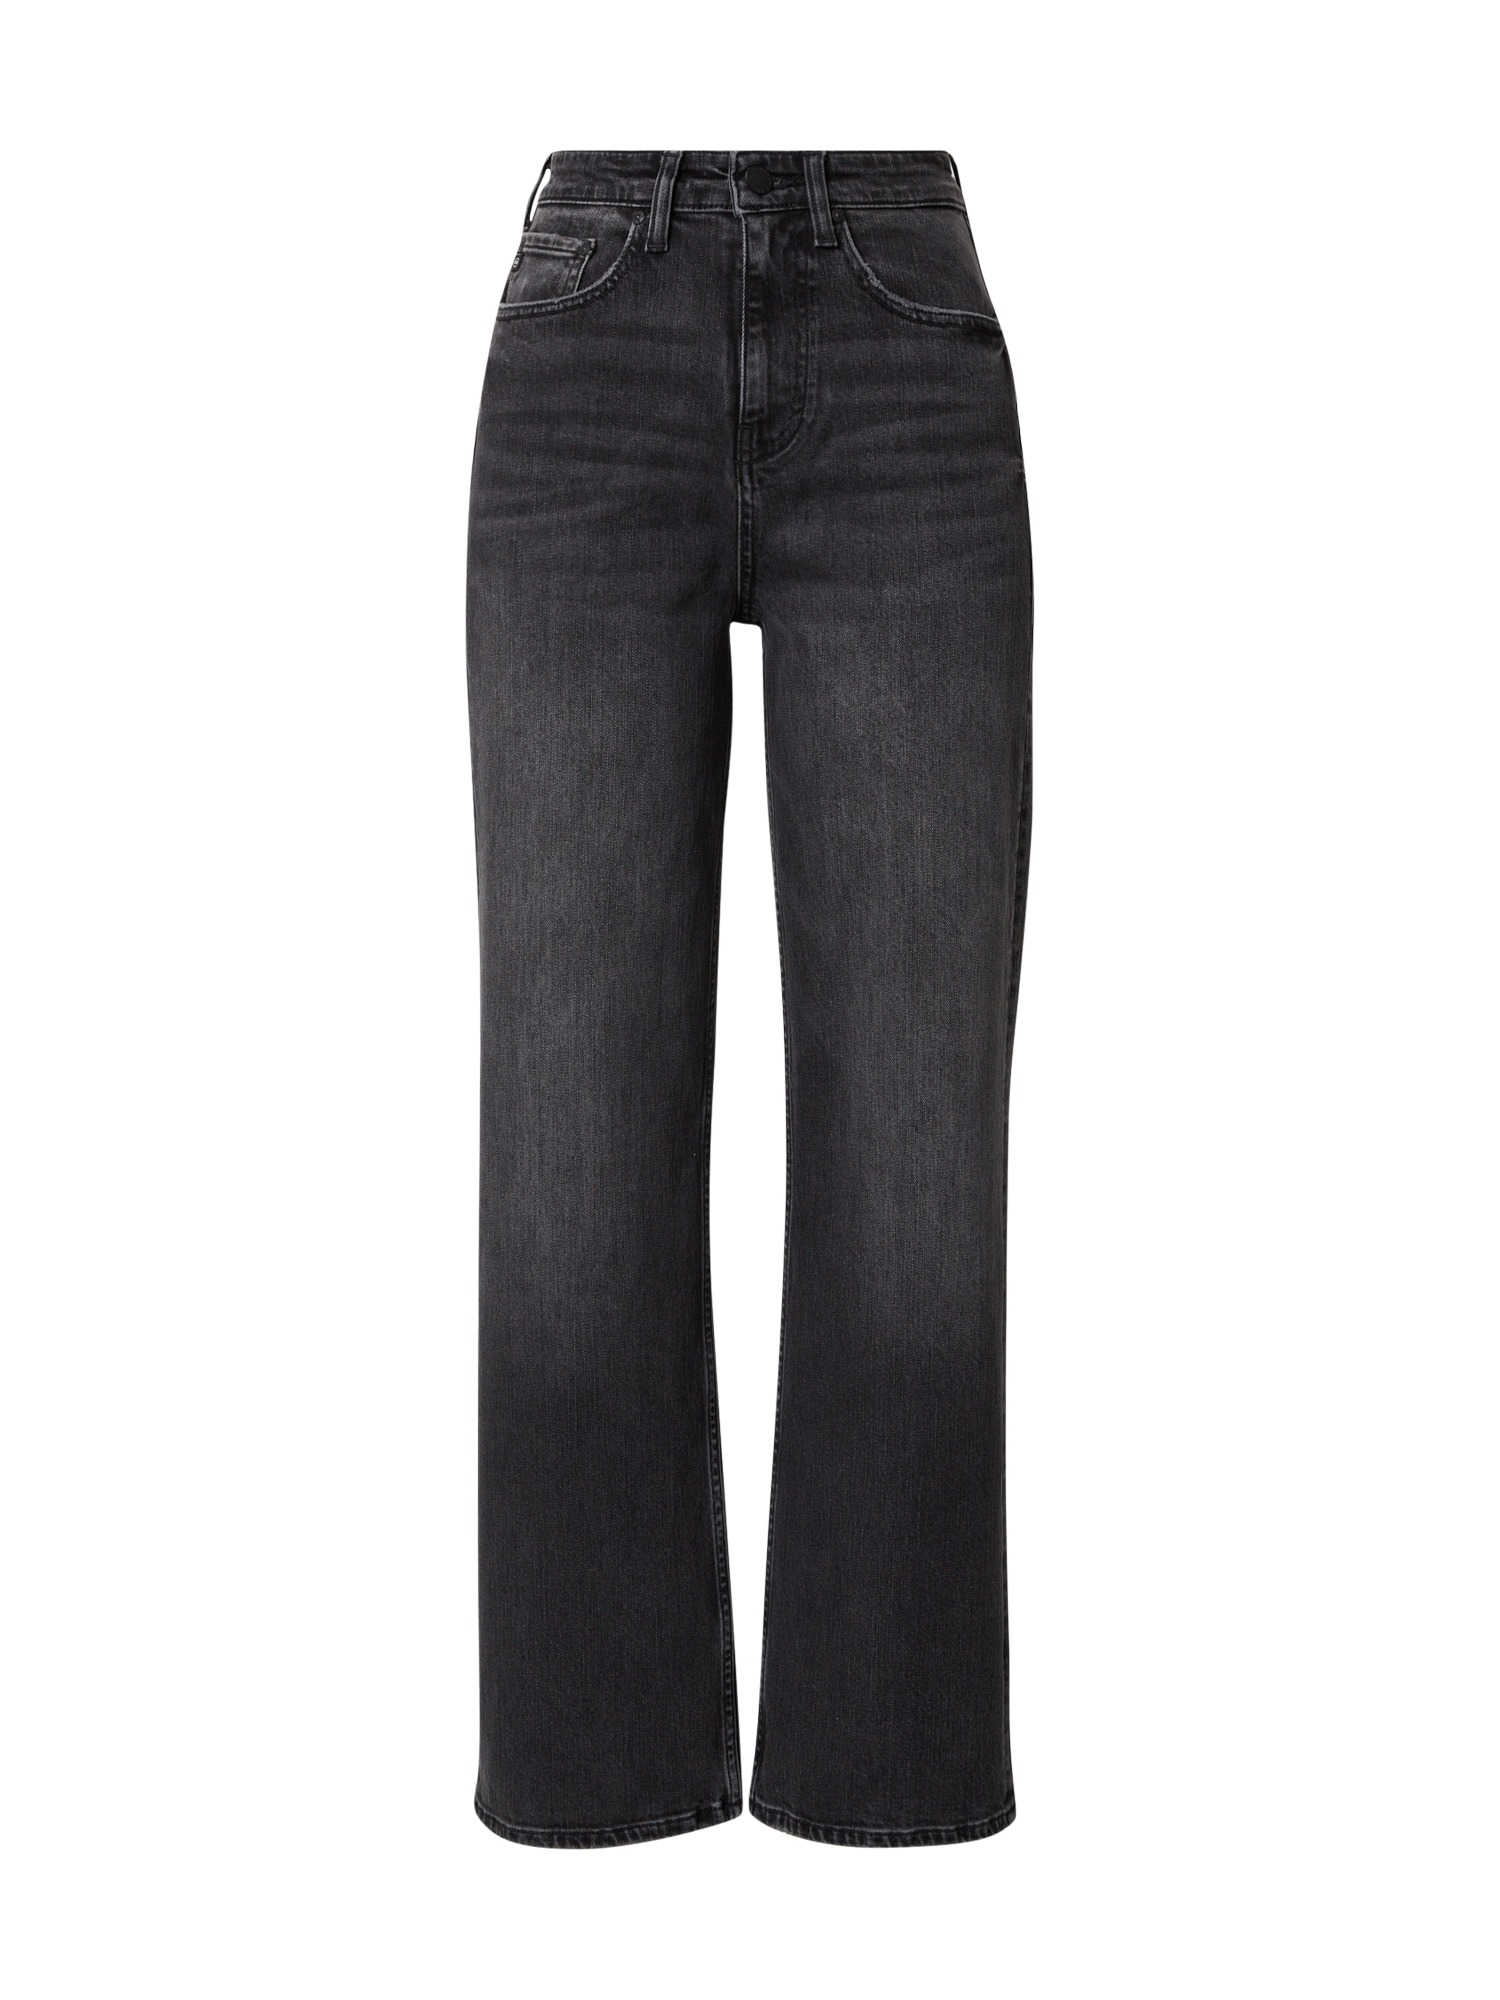 Odzież Kobiety AG Jeans Jeansy ALEXXIS w kolorze Czarnym 